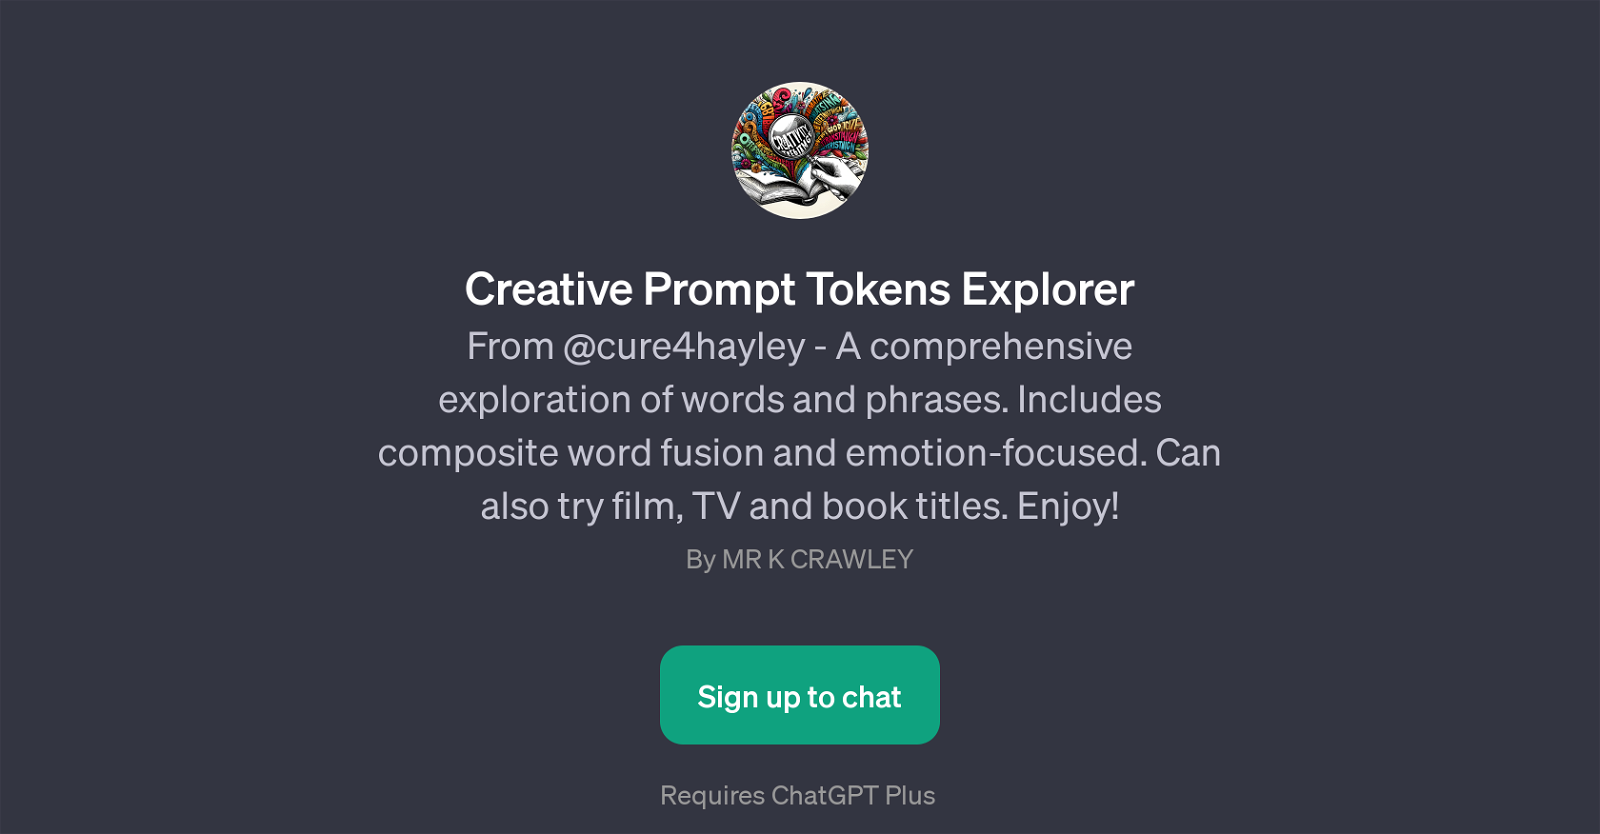 Creative Prompt Tokens Explorer website